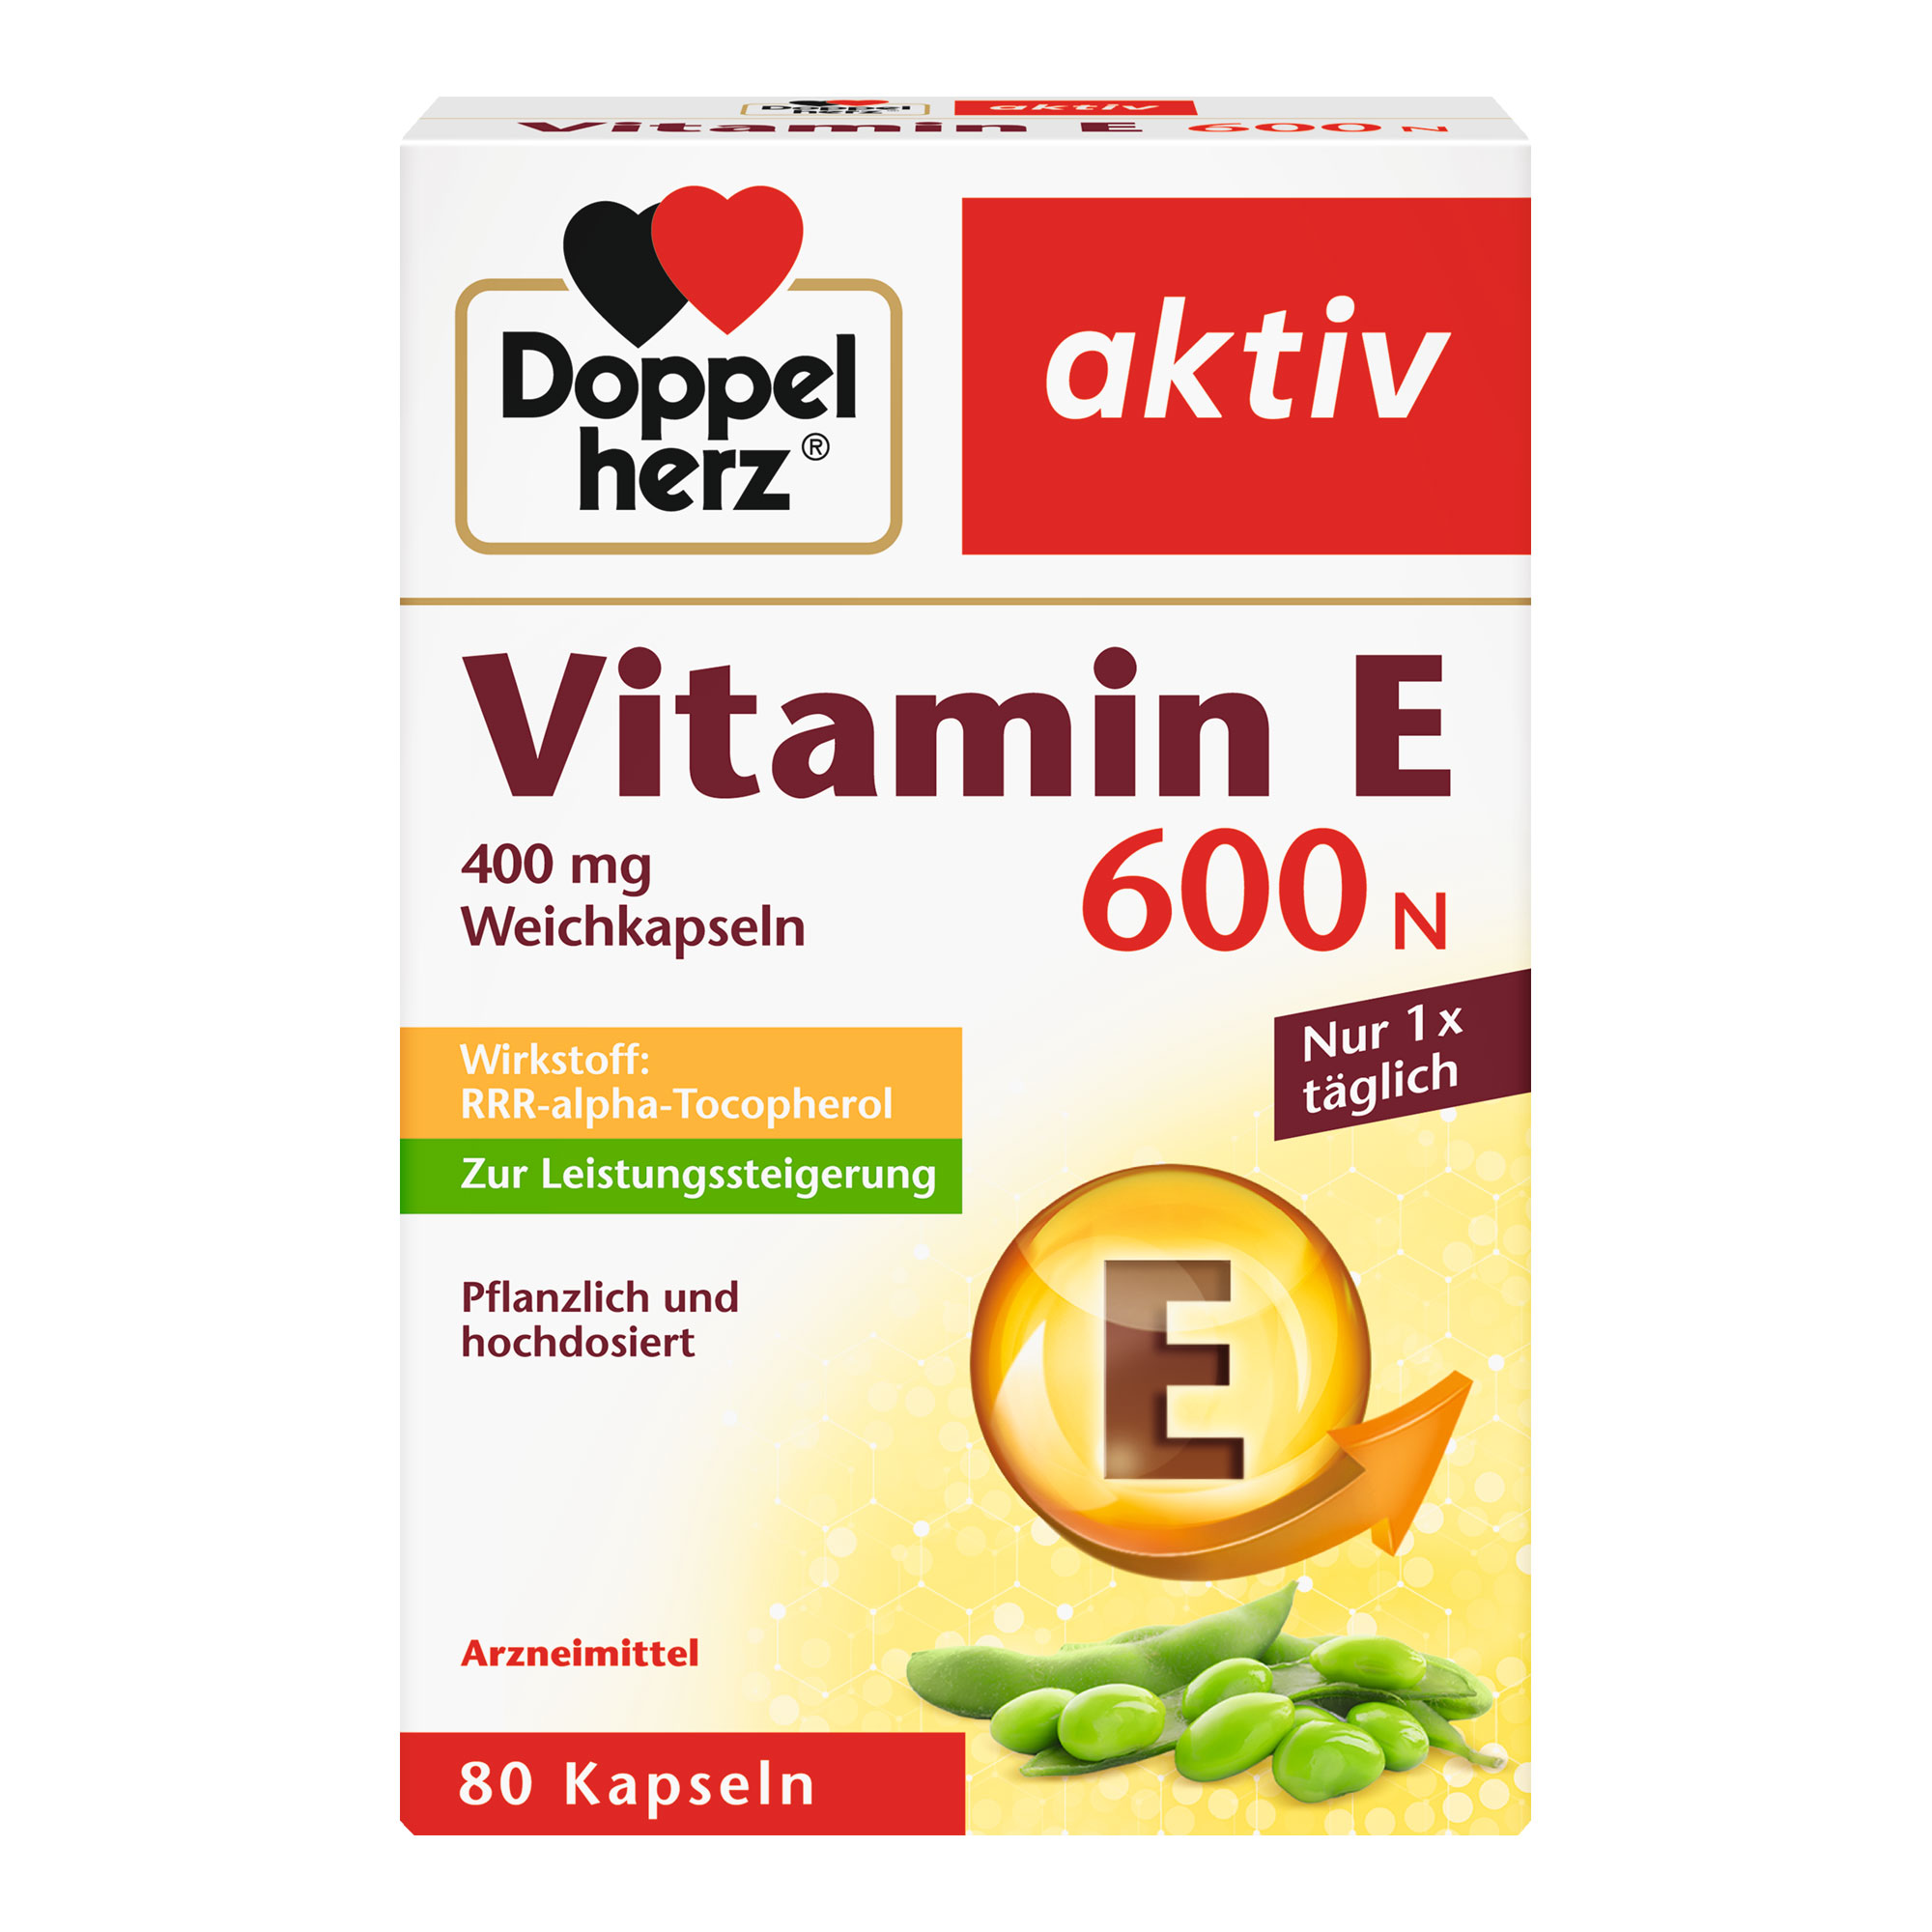 Vitaminpräparat zur Leistungssteigerung. Mit Vitamin E.